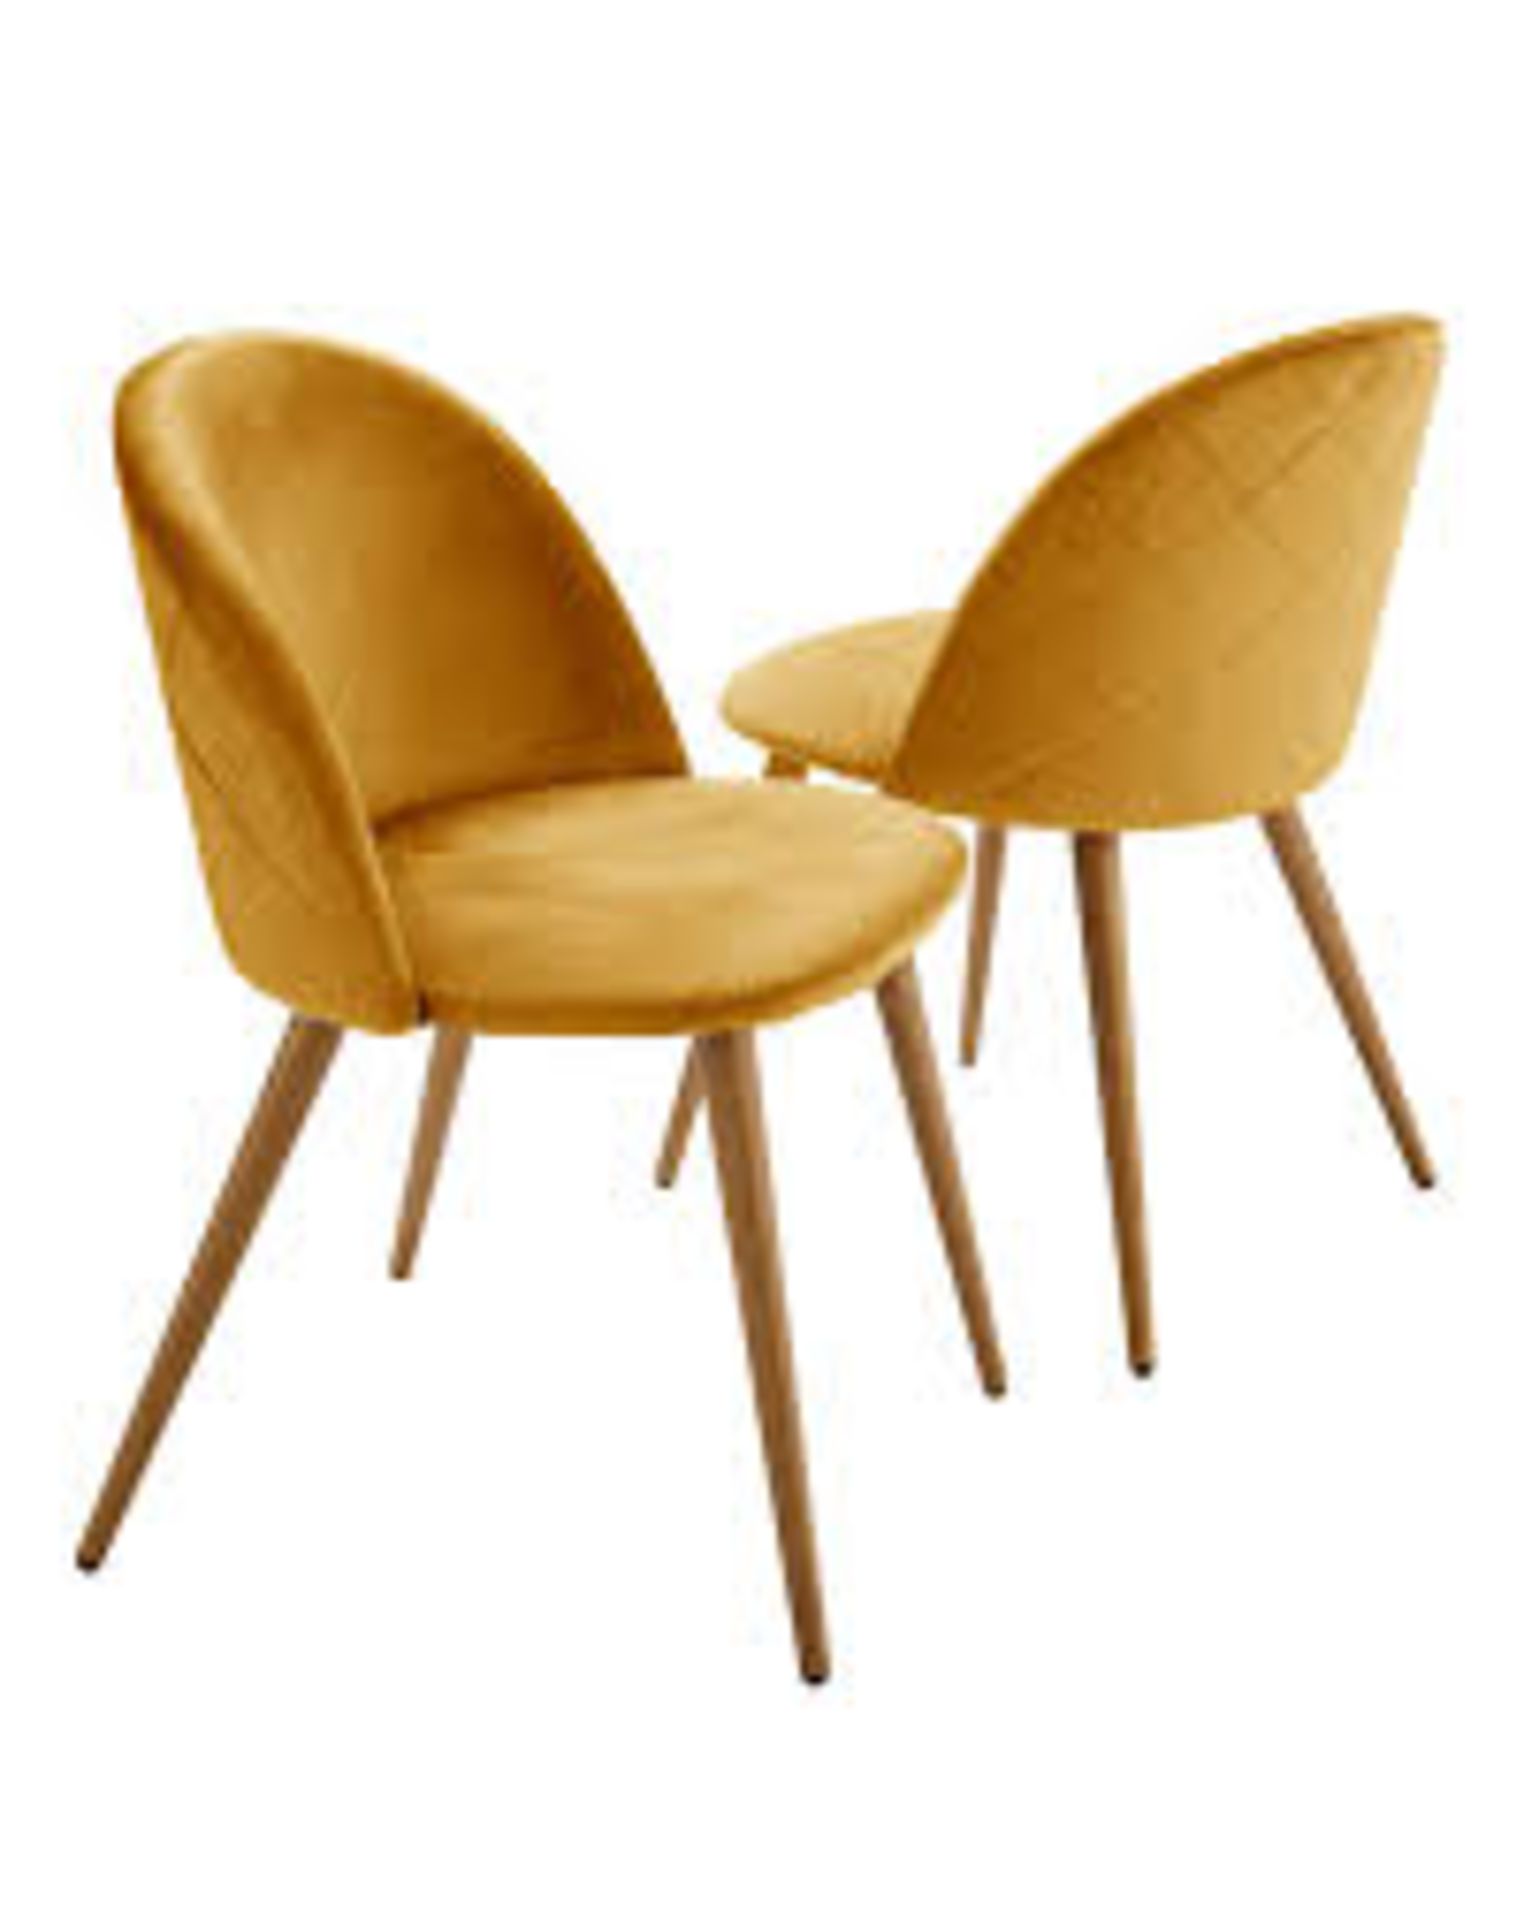 Klara Velvet Pair of Dining Chairs. - ER28. RRP £169.00. Upholstered in a soft velvet fabric with